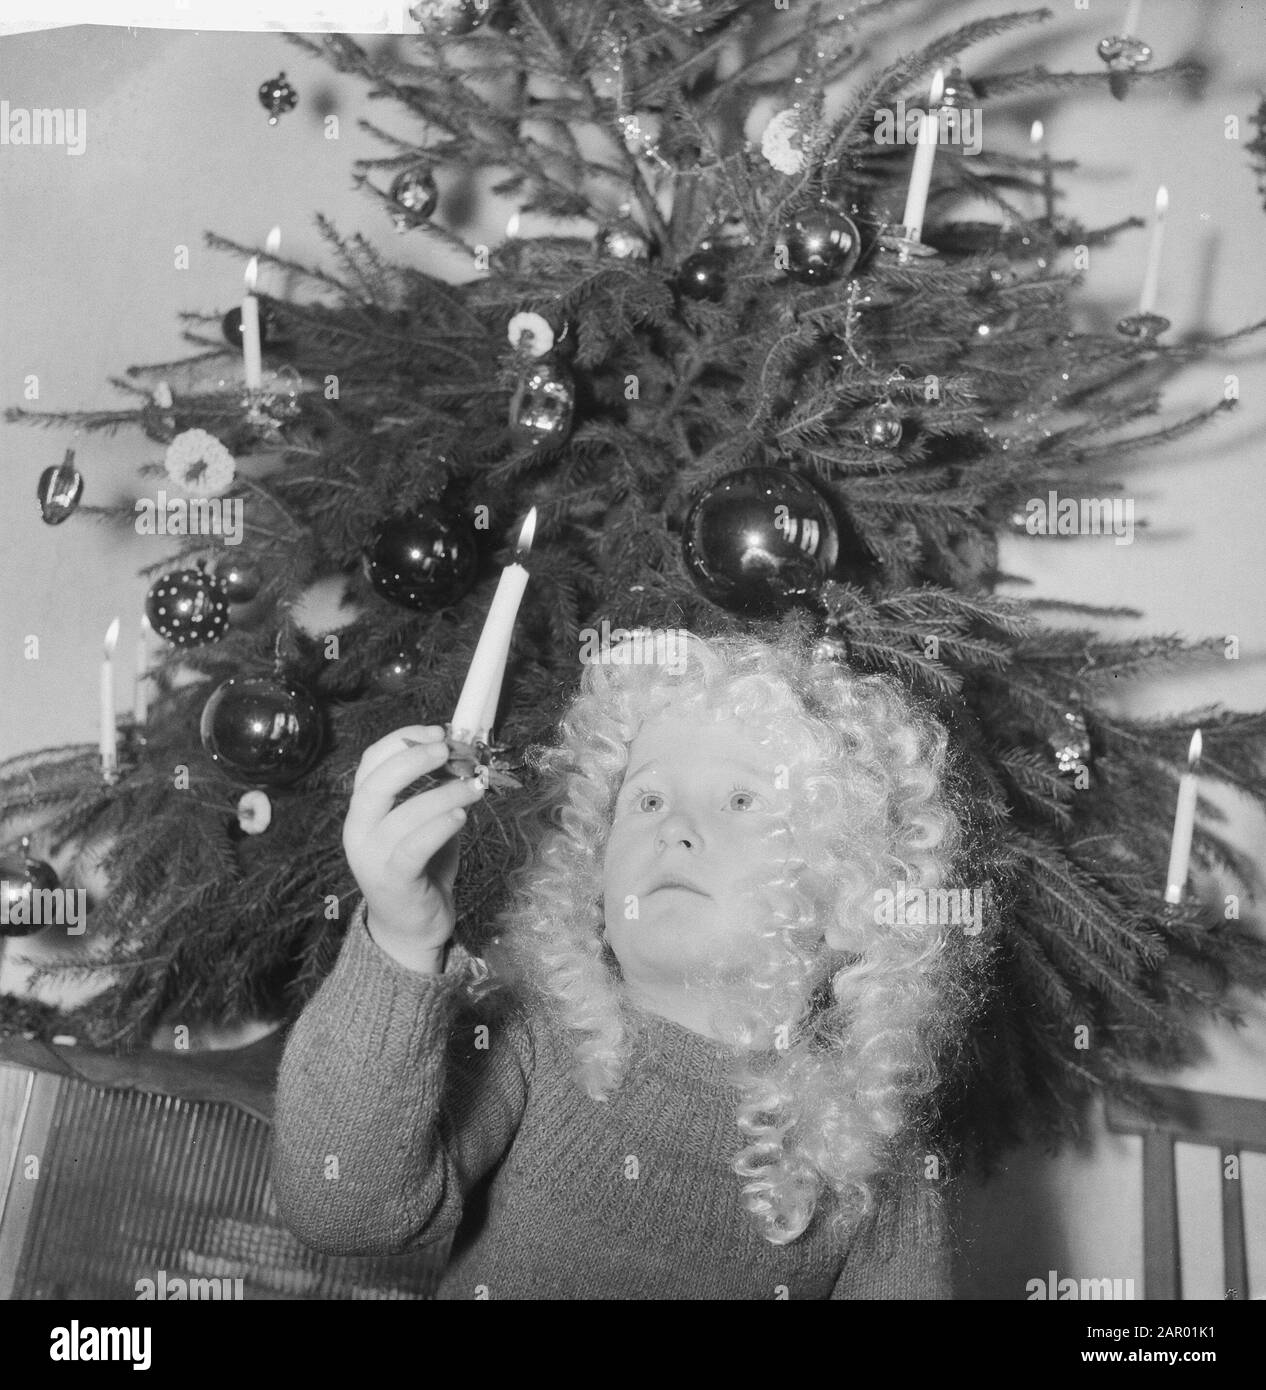 Kinder am Weihnachtsbaum. Junge mit Engelshaar am Kopf Datum: 18. Dezember  1961 Schlagwörter: Kinder, Weihnachtsbäume Stockfotografie - Alamy